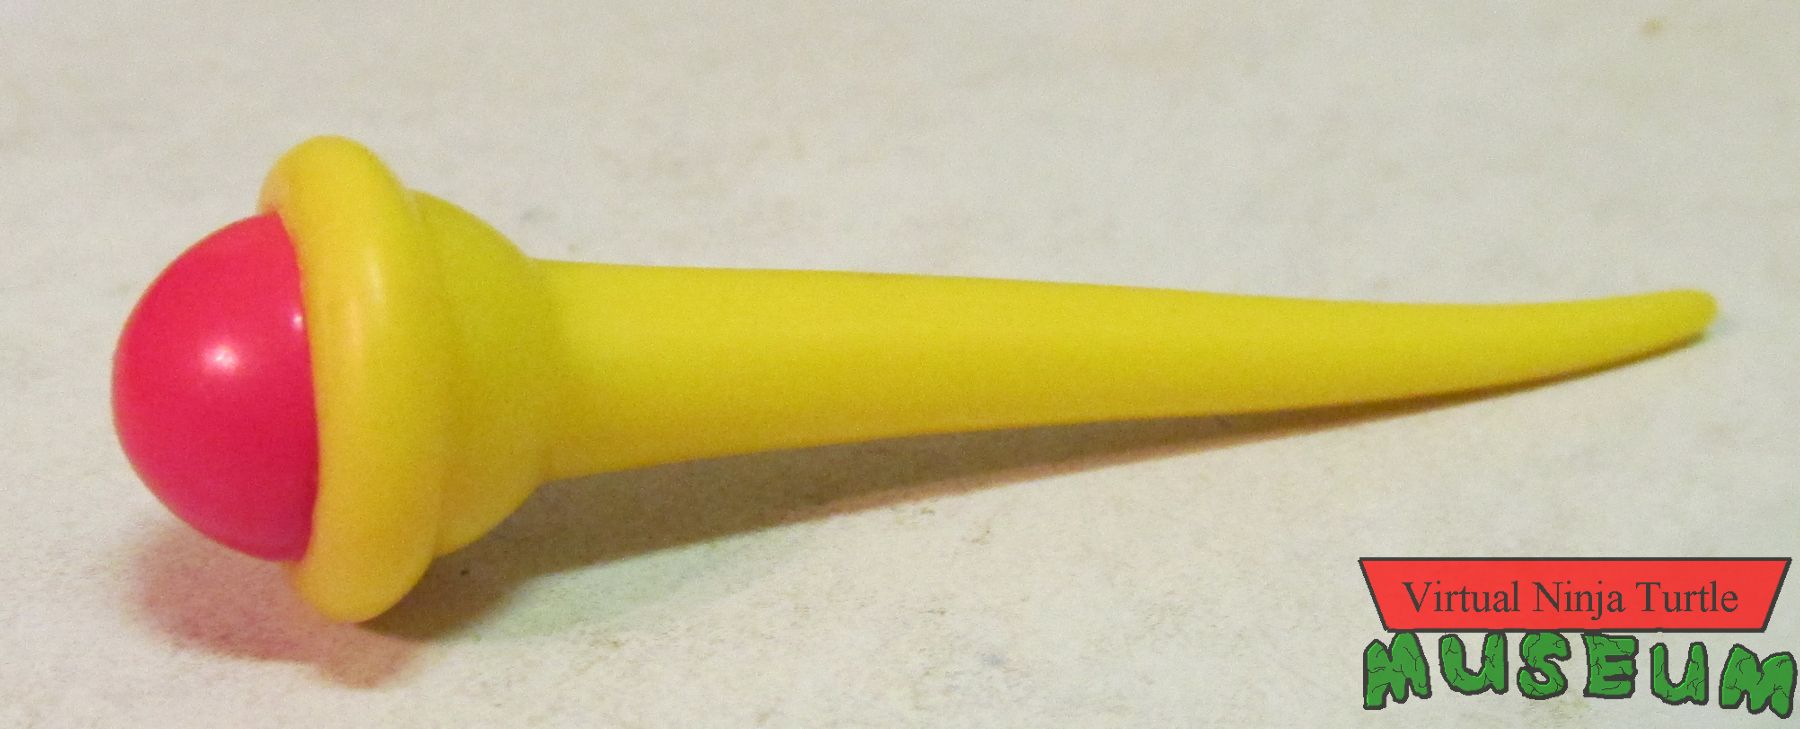 Magikoopa's scepter